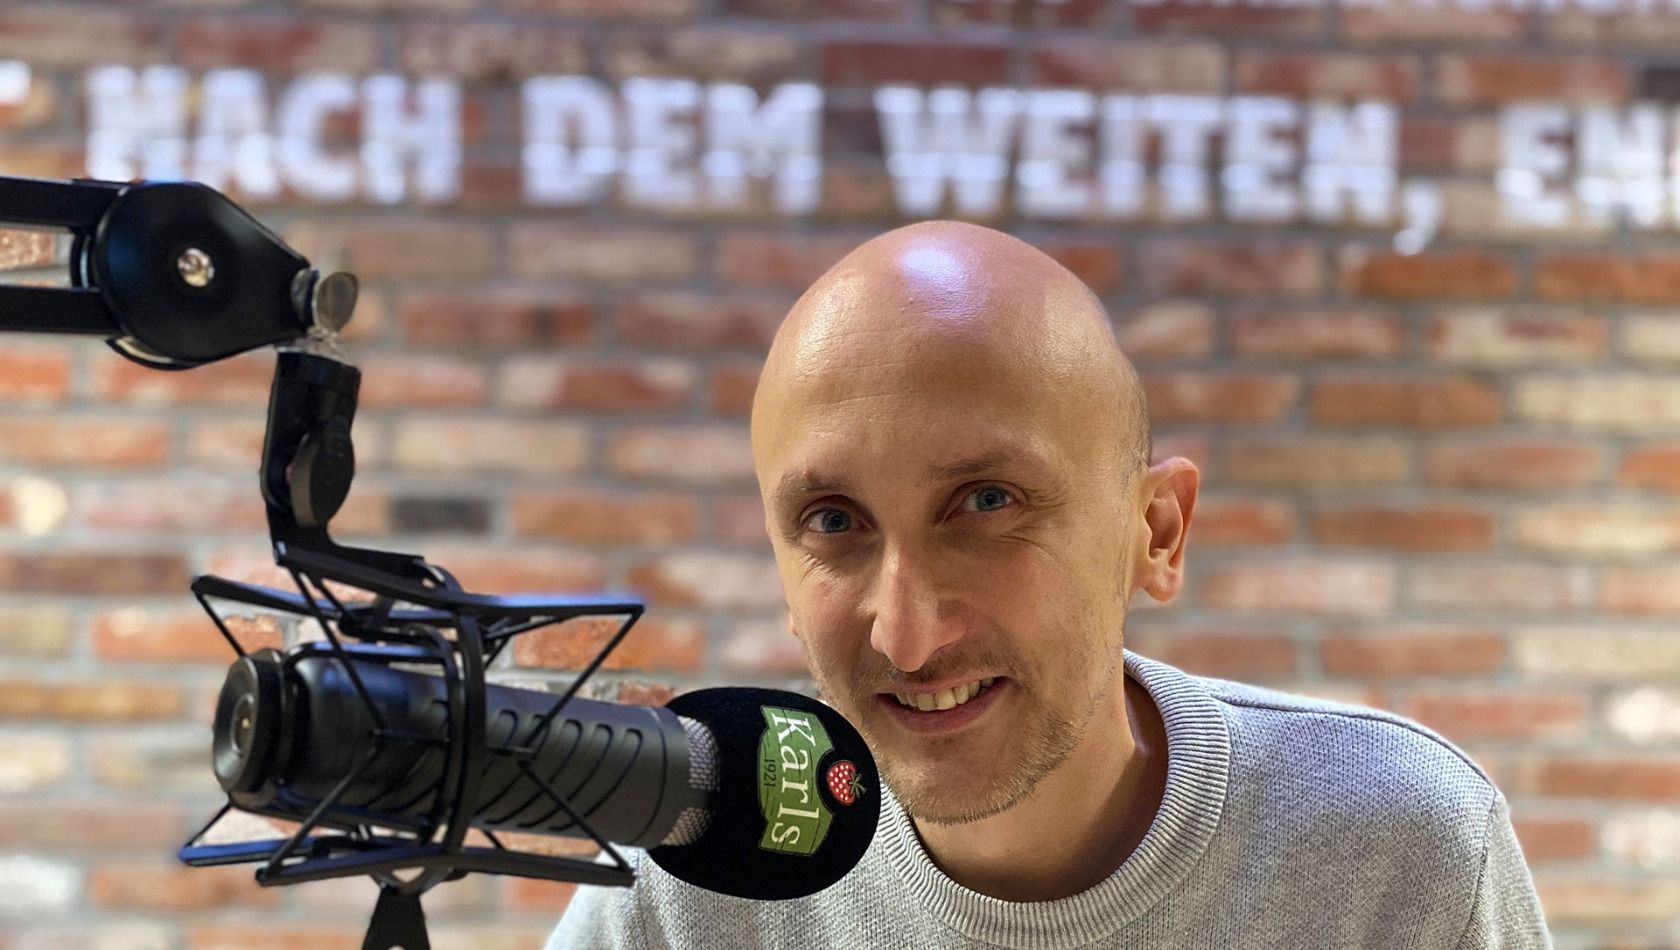 Karls Radio-Moderator Werner Wetter